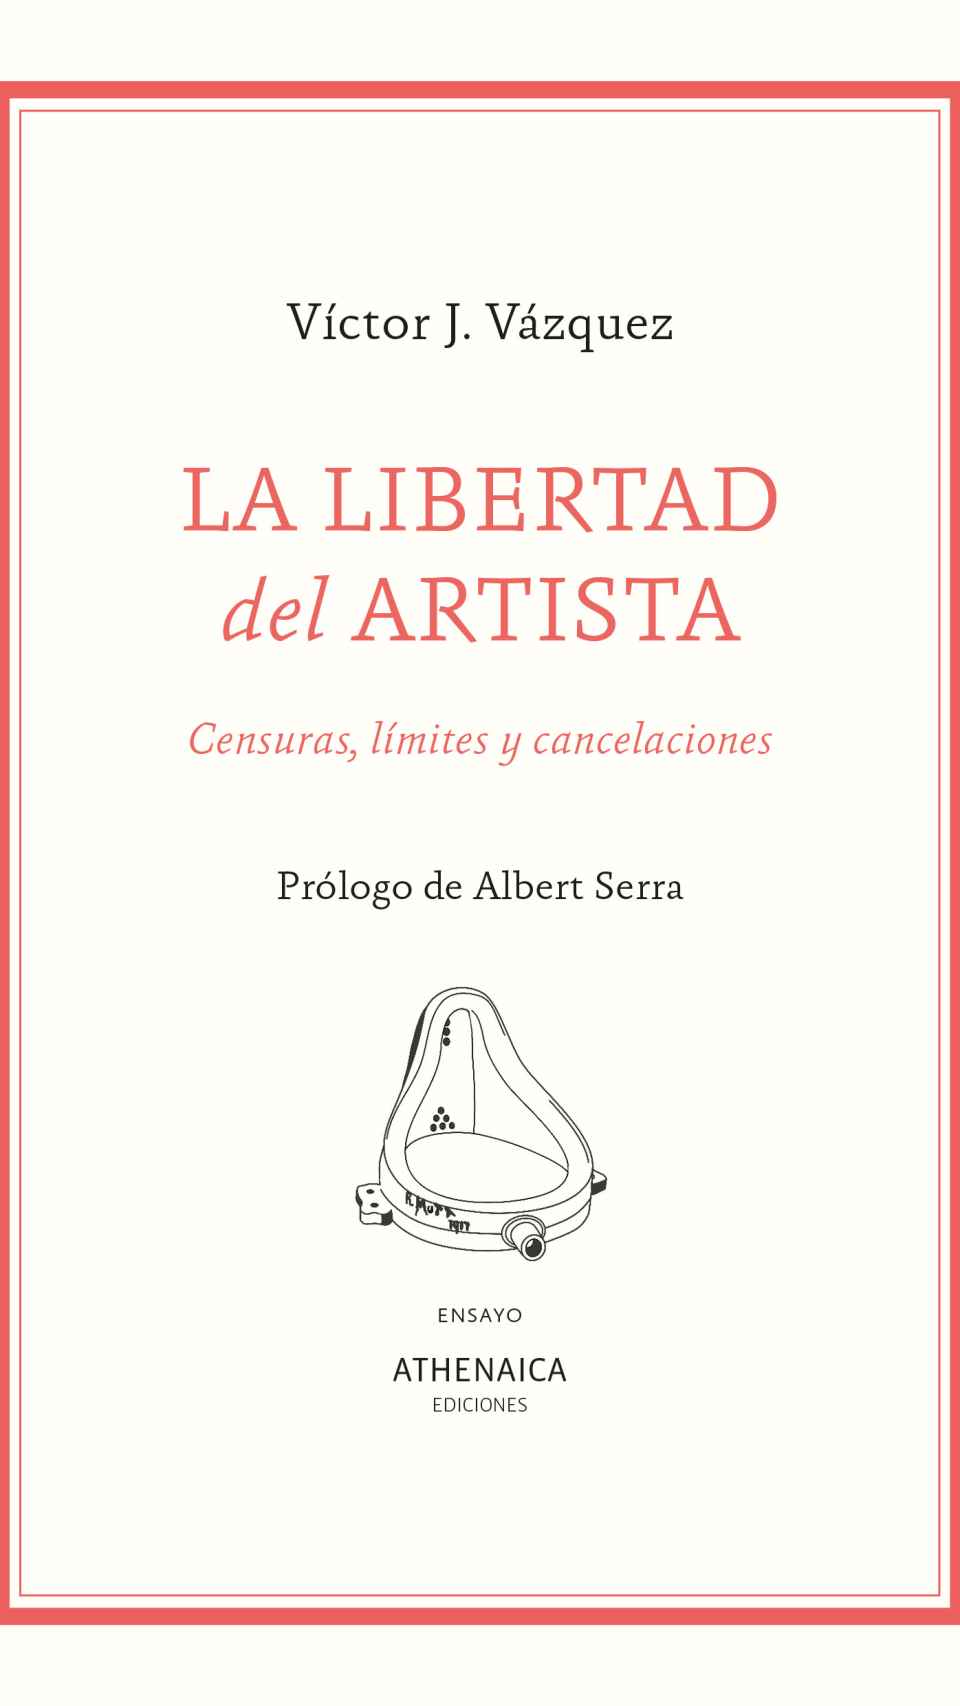 'La libertad del artista'